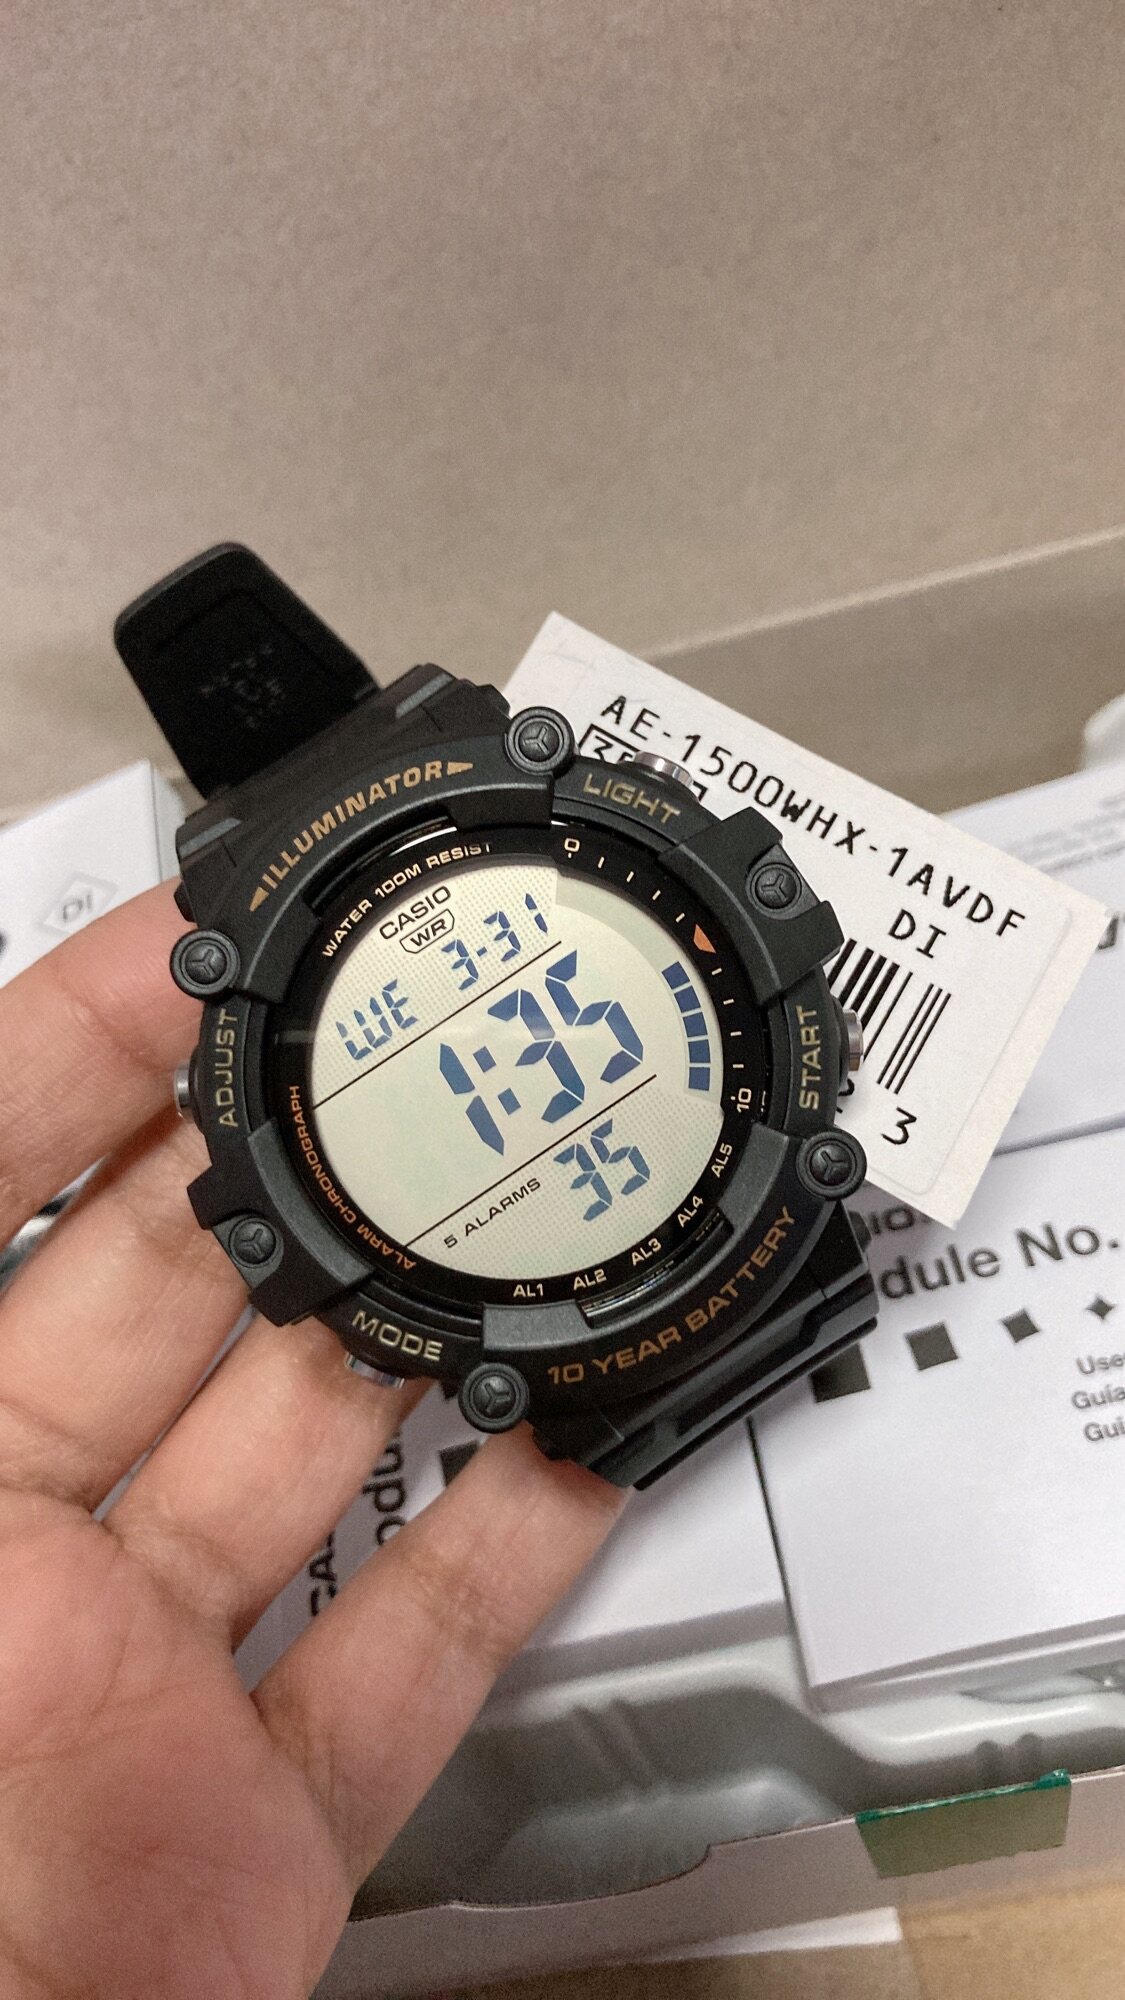 ภาพอธิบายเพิ่มเติมของ นาฬิกาคาสิโอของแท้ รุ่น AE-1500WH-1A,AE-1500WH-8B ทรงสปอร์ต เทห์ๆ สำหรับคุณผู้ชาย สินค้ามีรับประกัน1ปีเต็ม